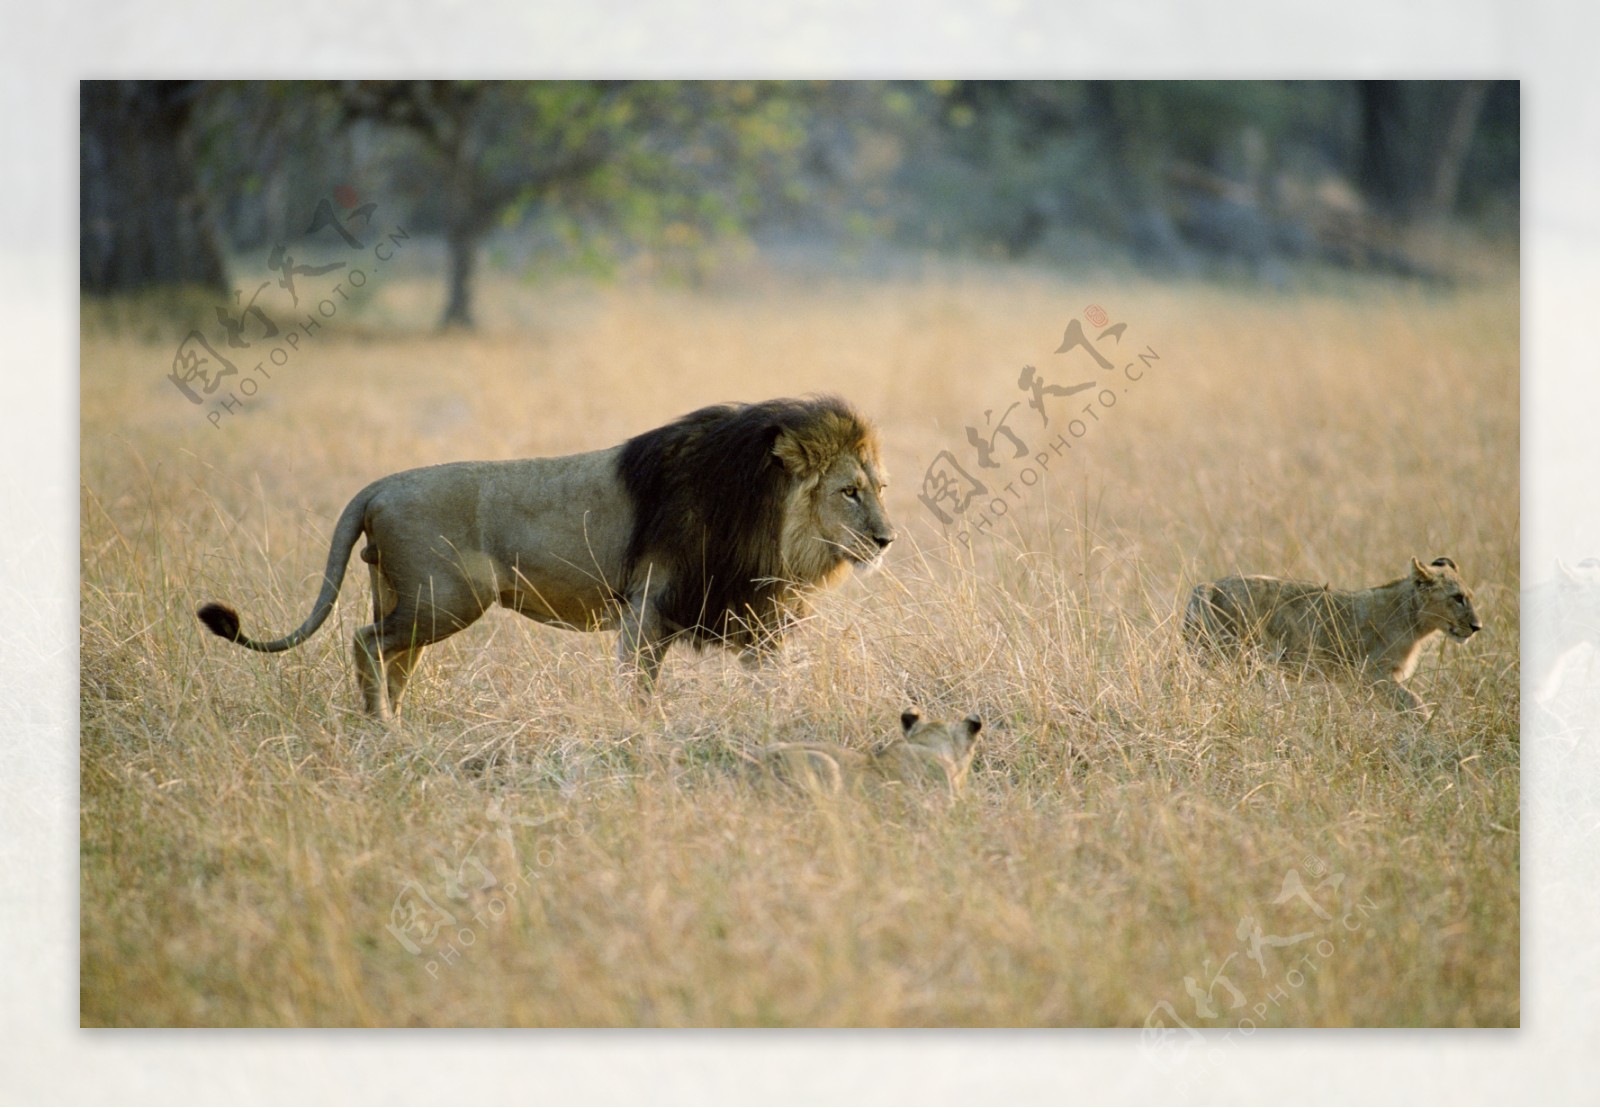 非洲野生动物狮子图片